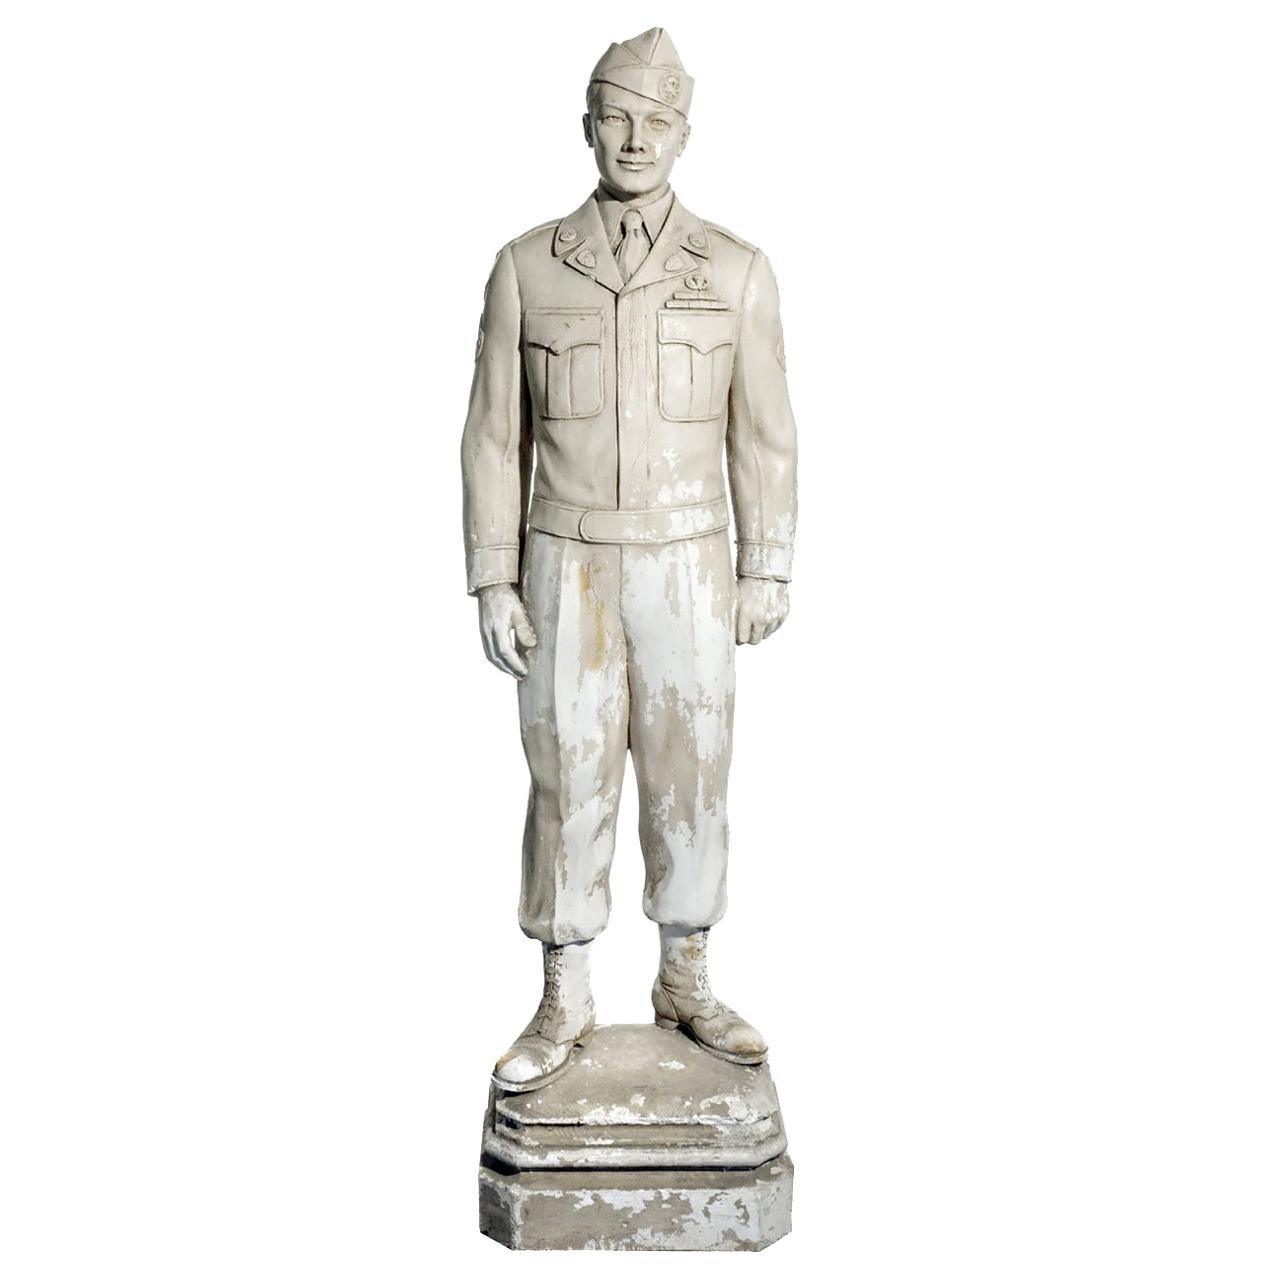 Original Plaster Artists Model for Larger Bronze Statue